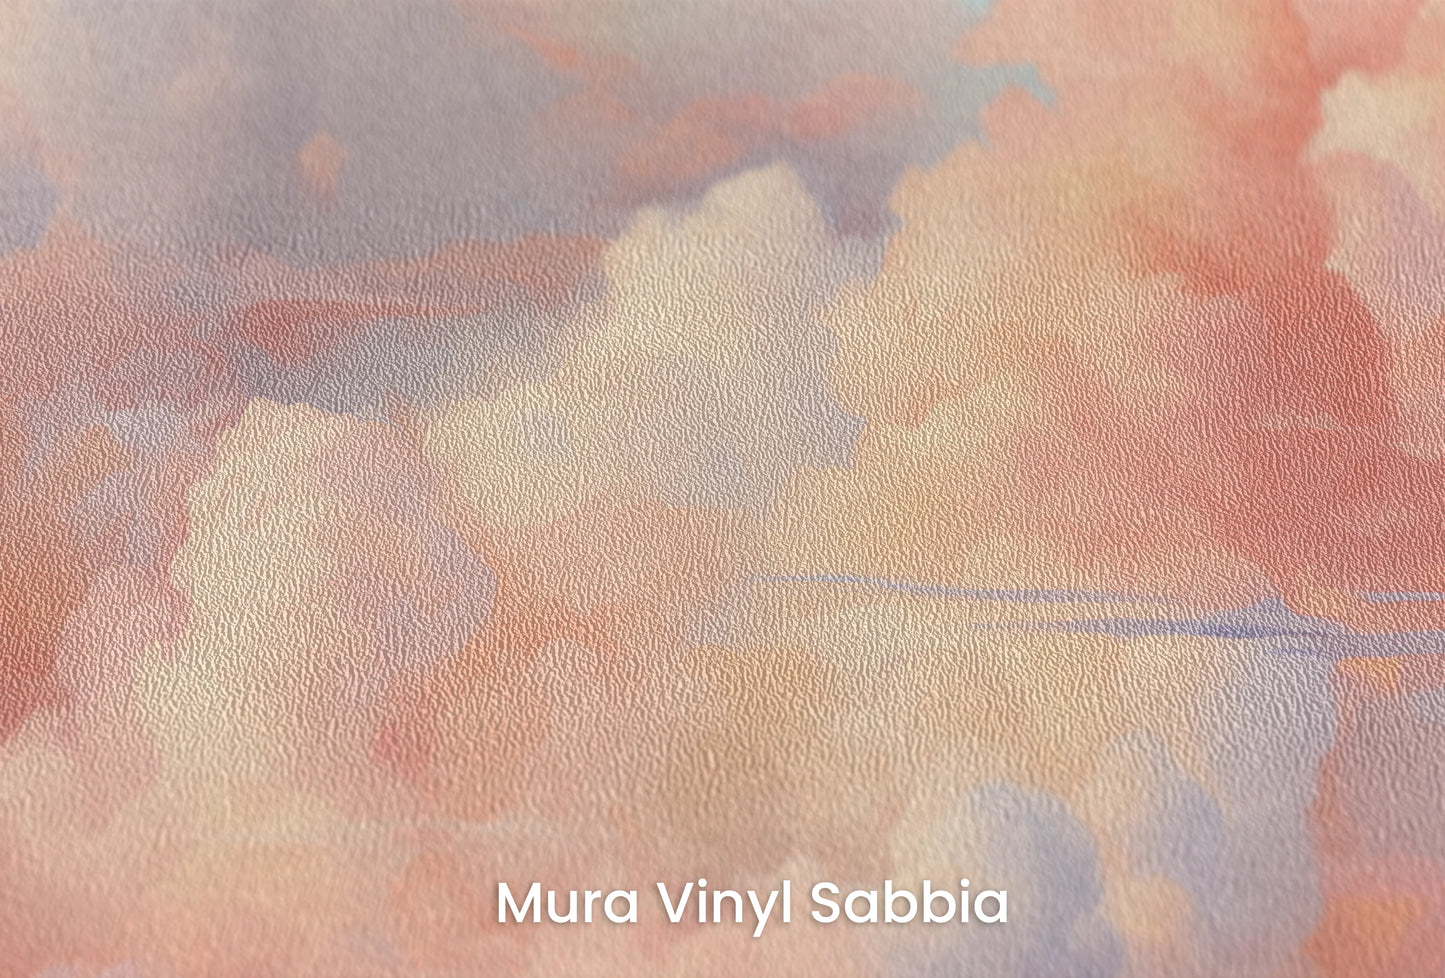 Zbliżenie na artystyczną fototapetę o nazwie Blushing Skies na podłożu Mura Vinyl Sabbia struktura grubego ziarna piasku.